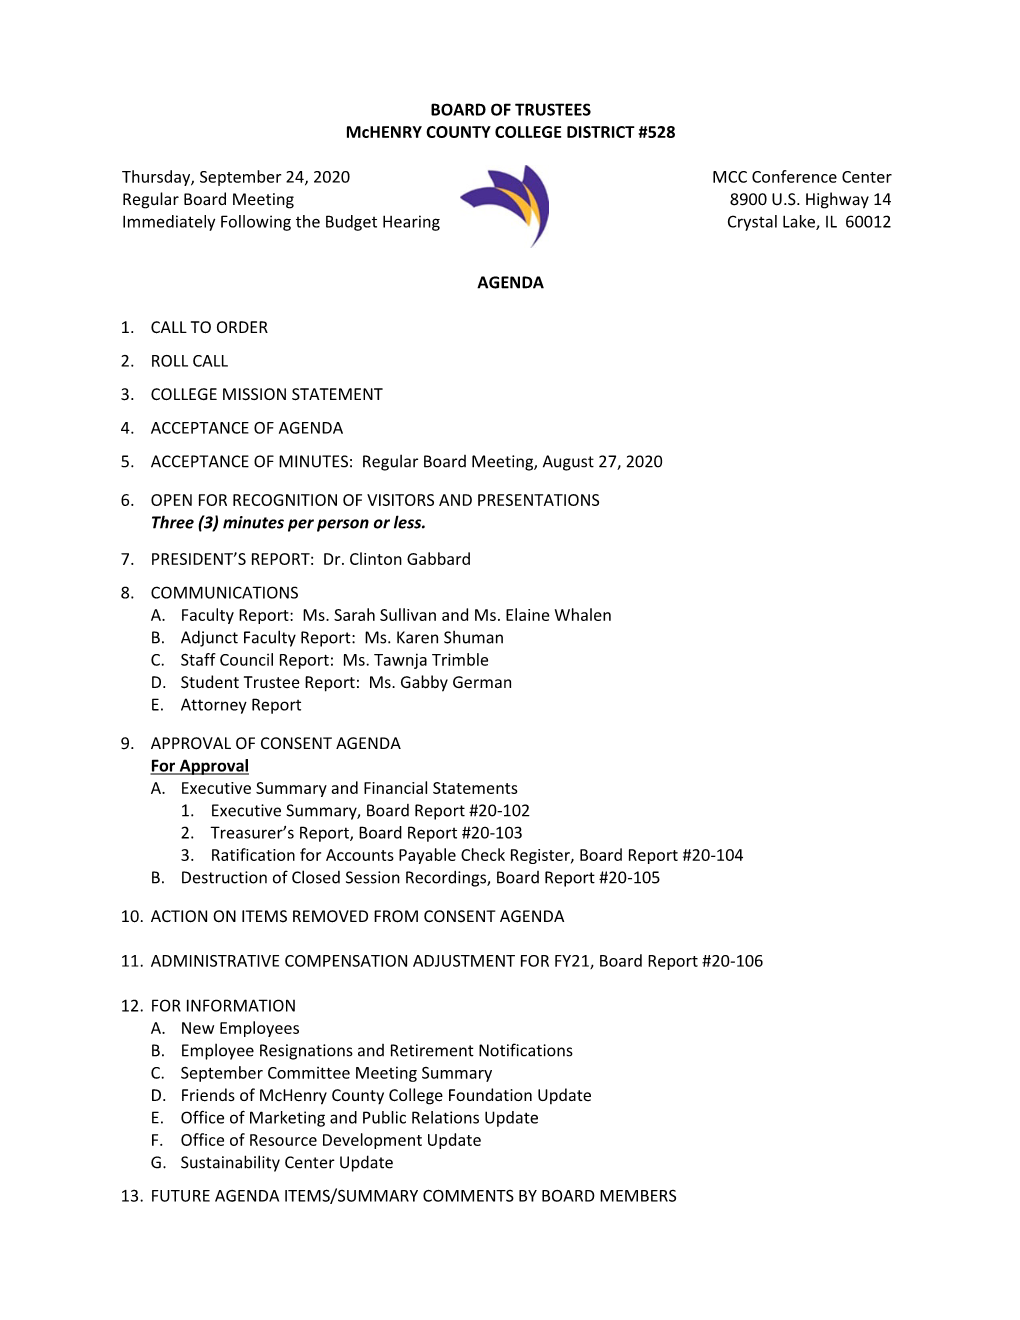 09/24/20 Board of Trustees Meeting Packet